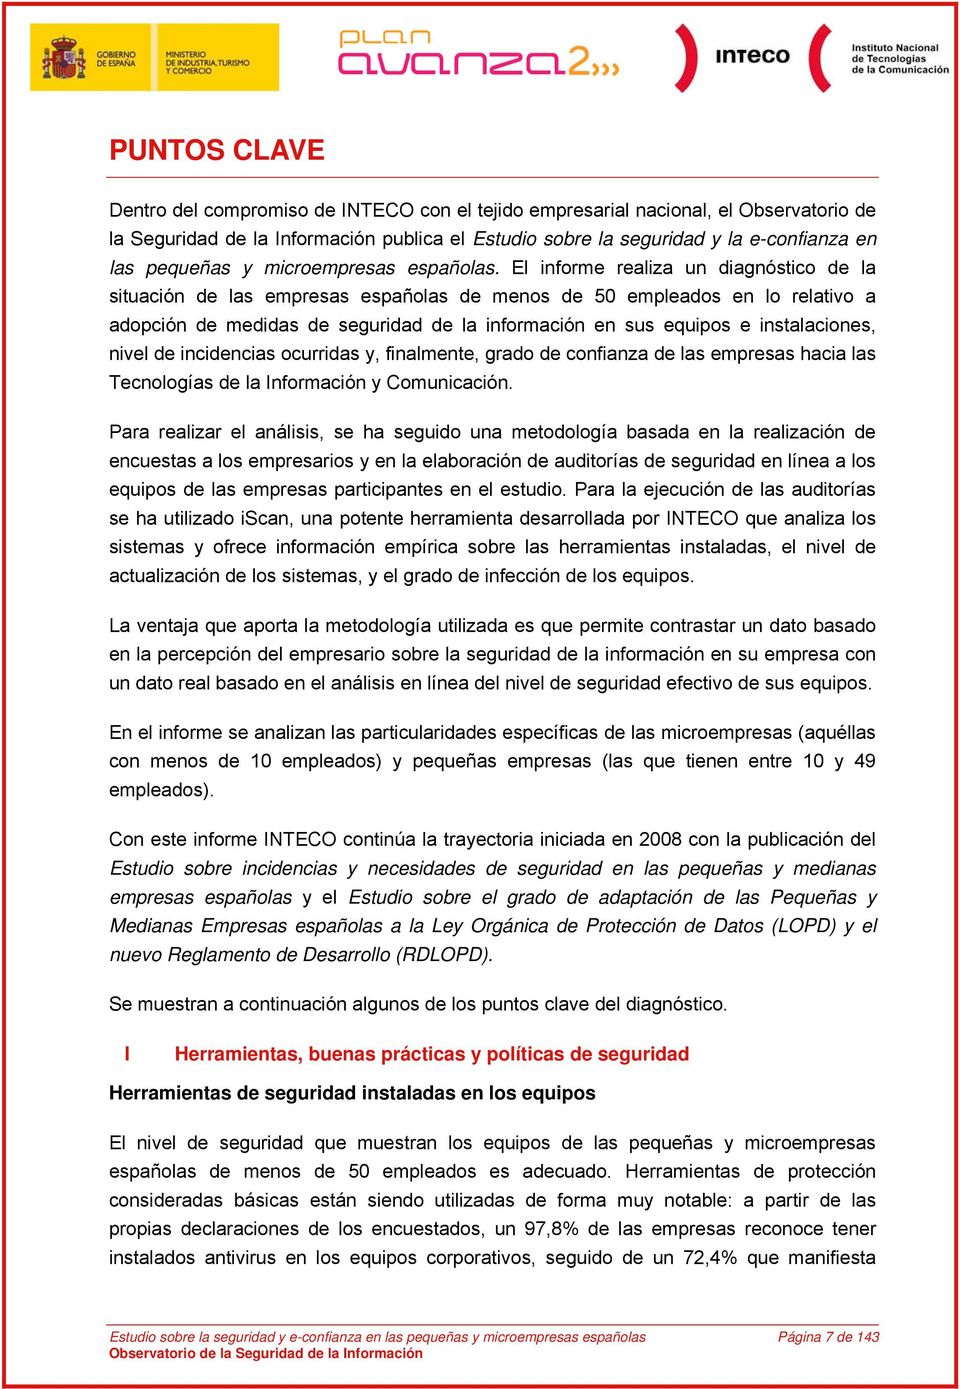 El informe realiza un diagnóstico de la situación de las empresas españolas de menos de 50 empleados en lo relativo a adopción de medidas de seguridad de la información en sus equipos e